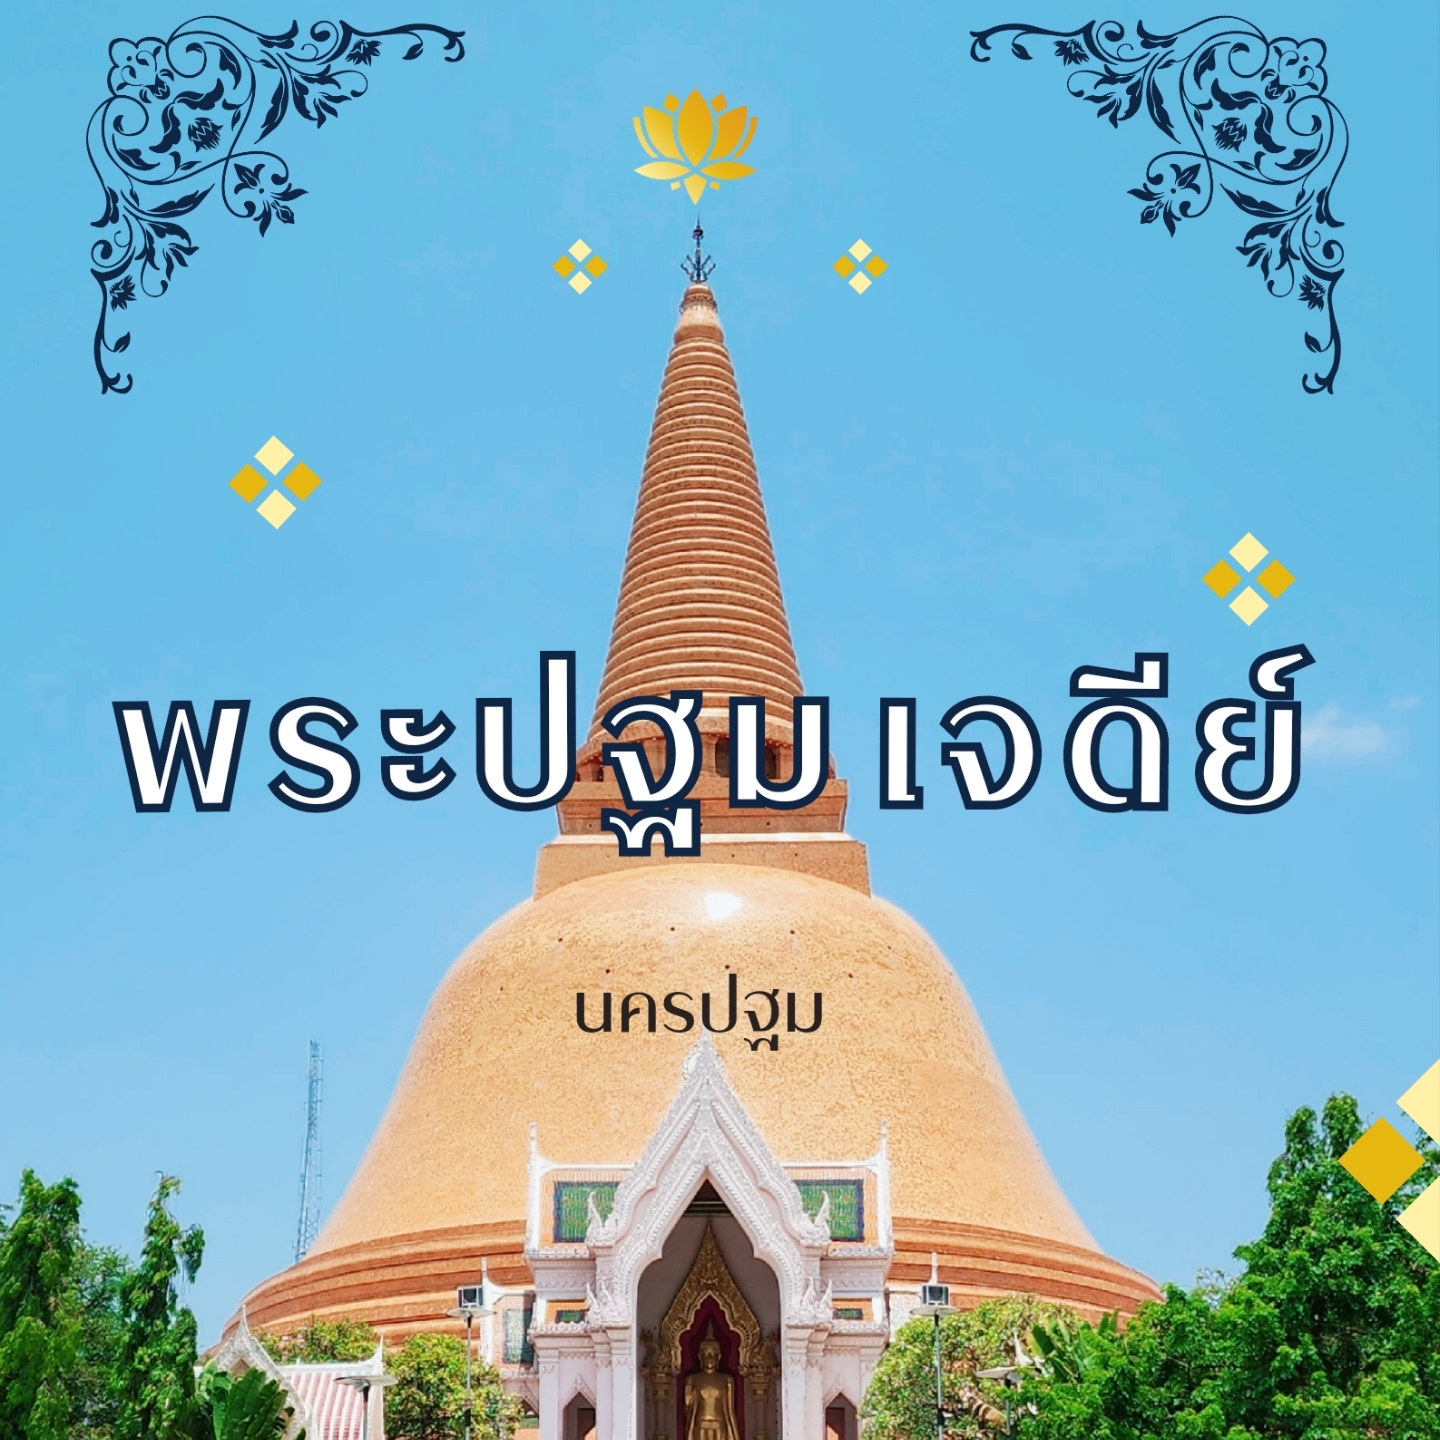 Phra ​ ปฐม​ Chedi ​